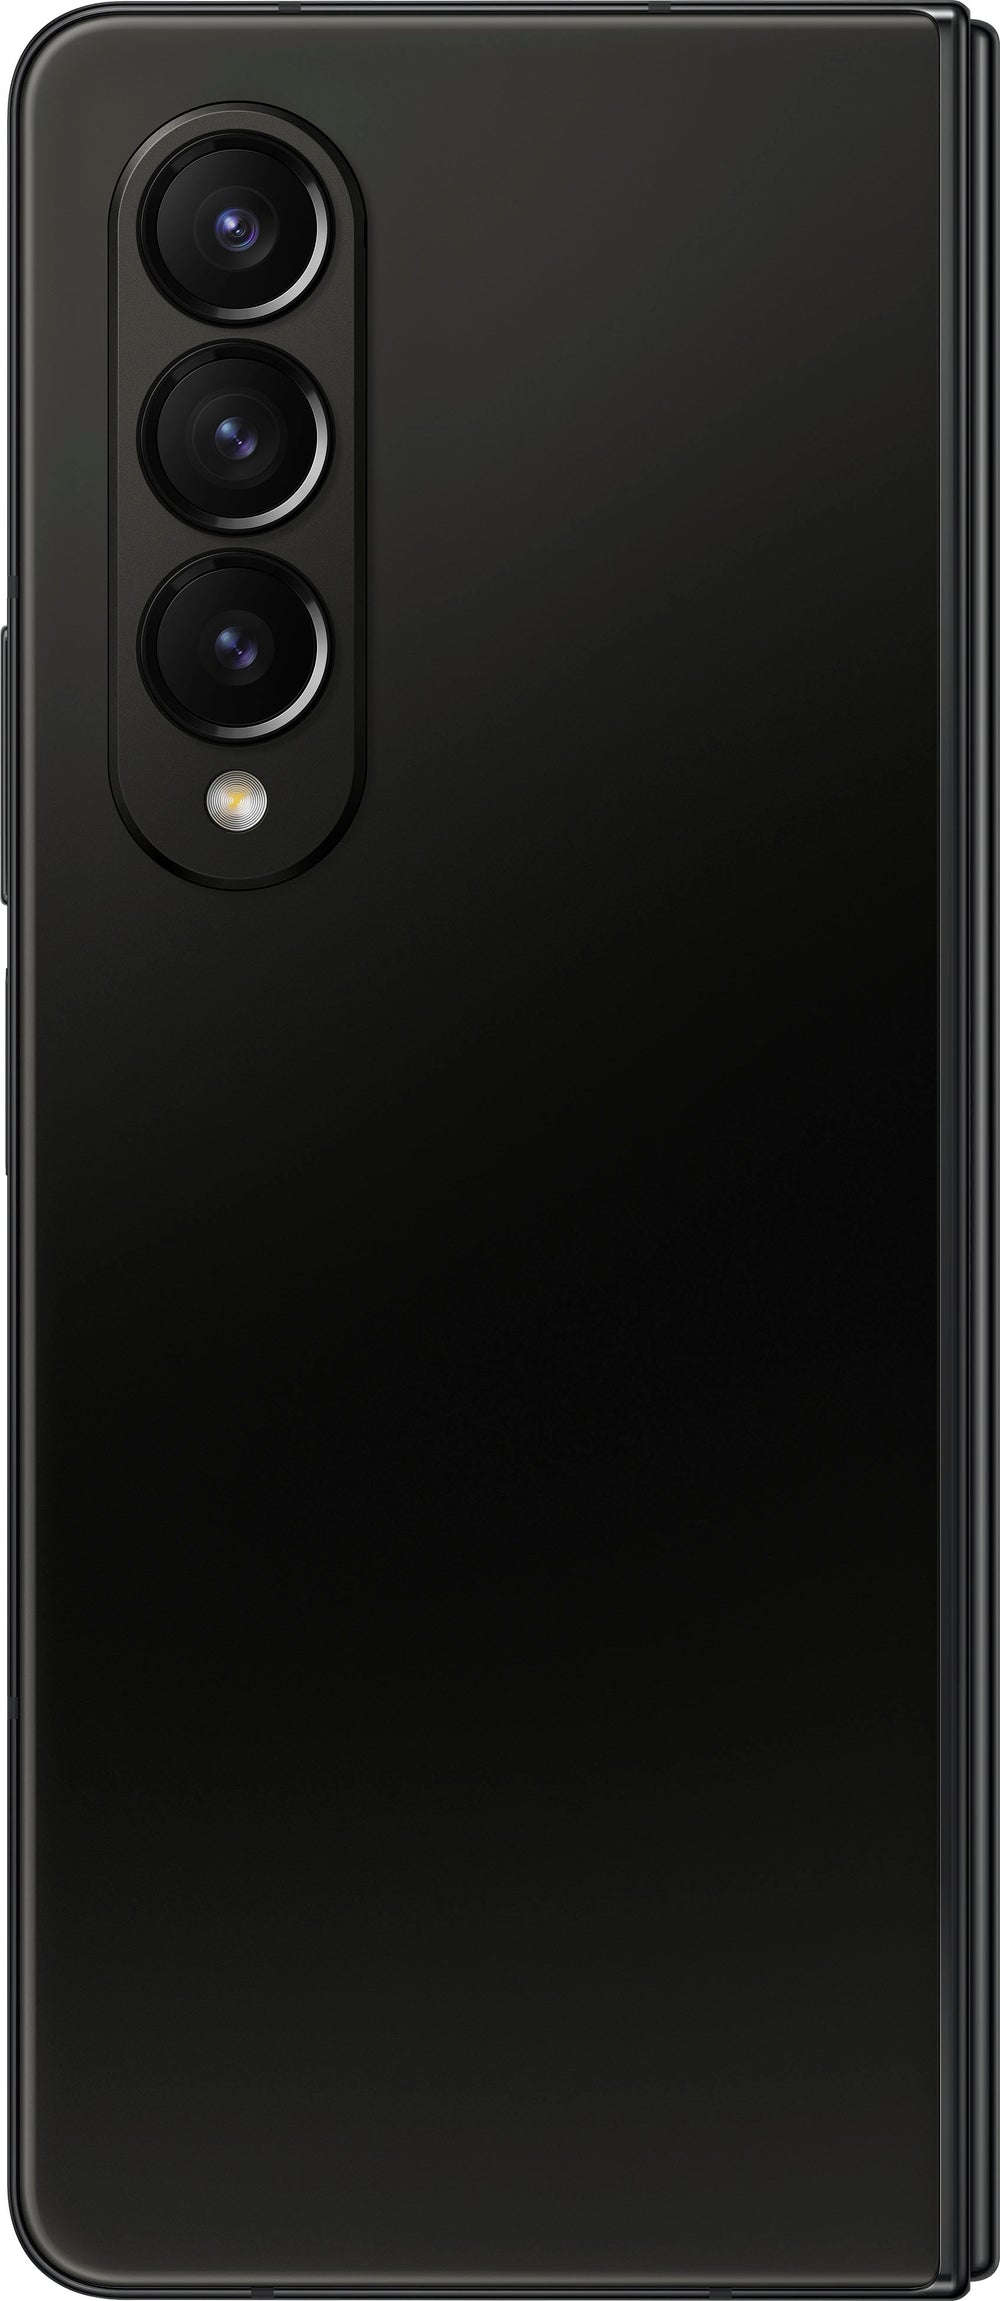 Samsung - Galaxy Z Fold4 512GB - Phantom Black (Verizon)_1